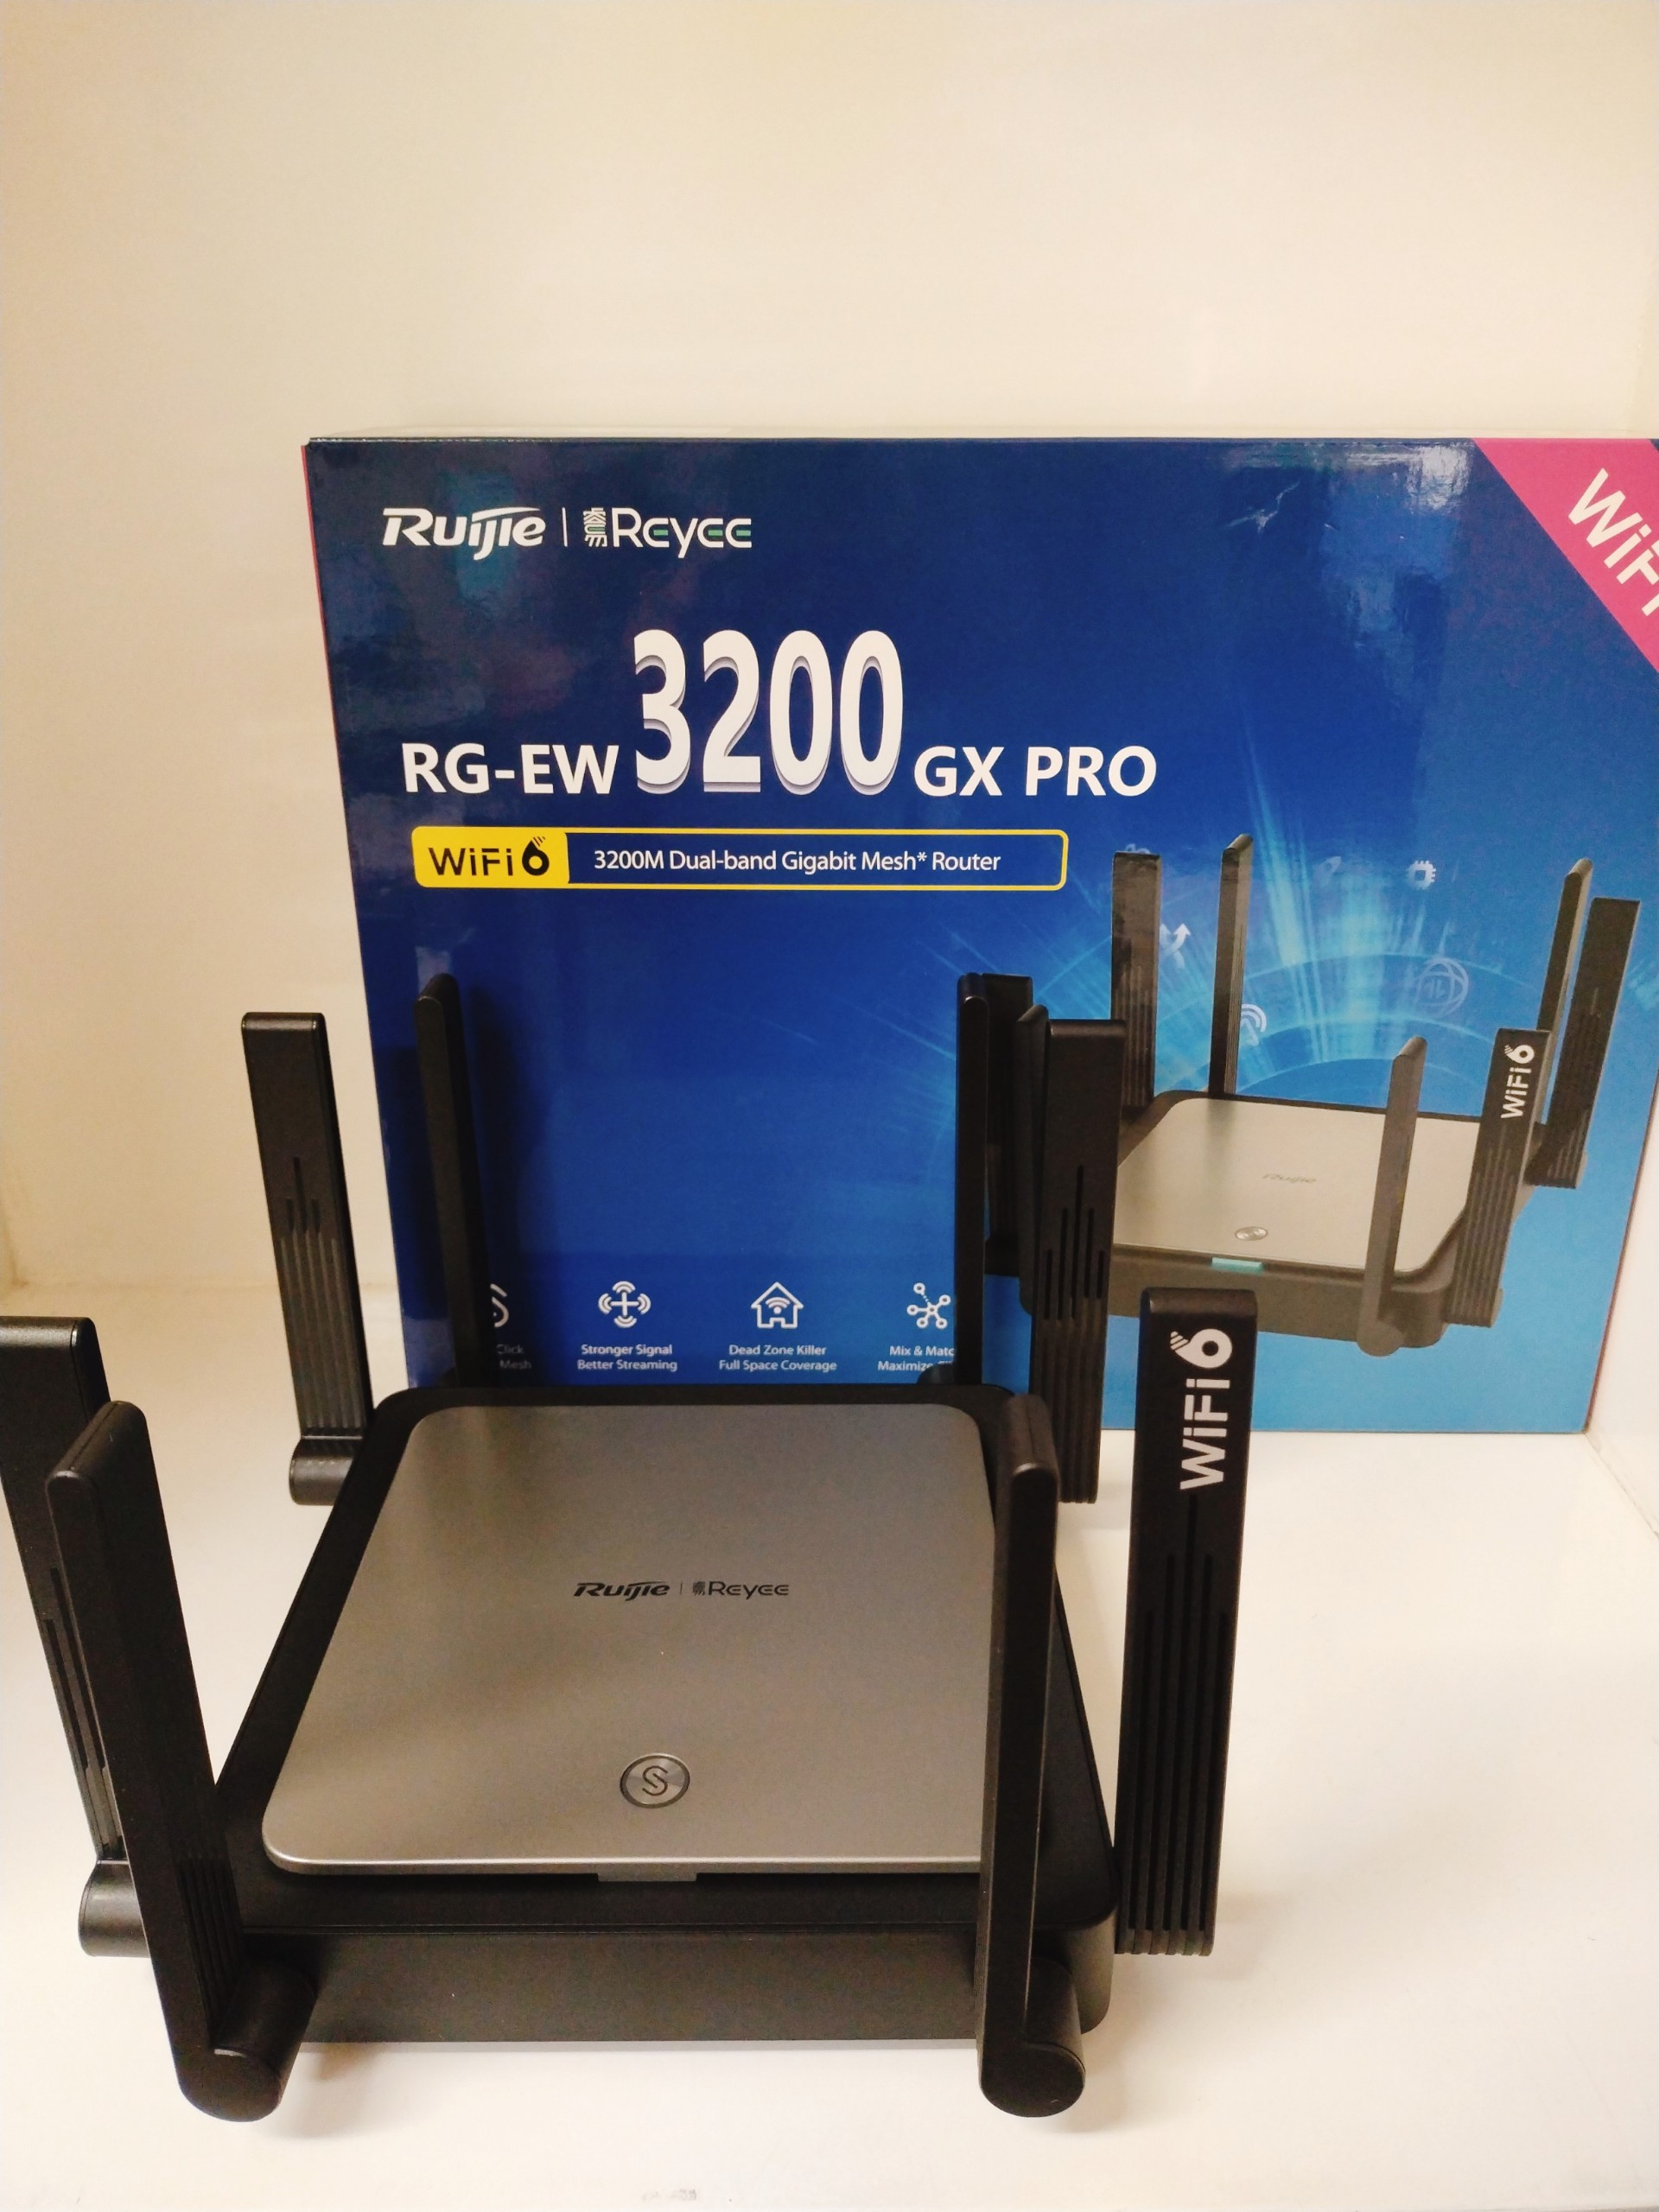 Ruijie 3200 Pro chính hãng tại NetworkPro